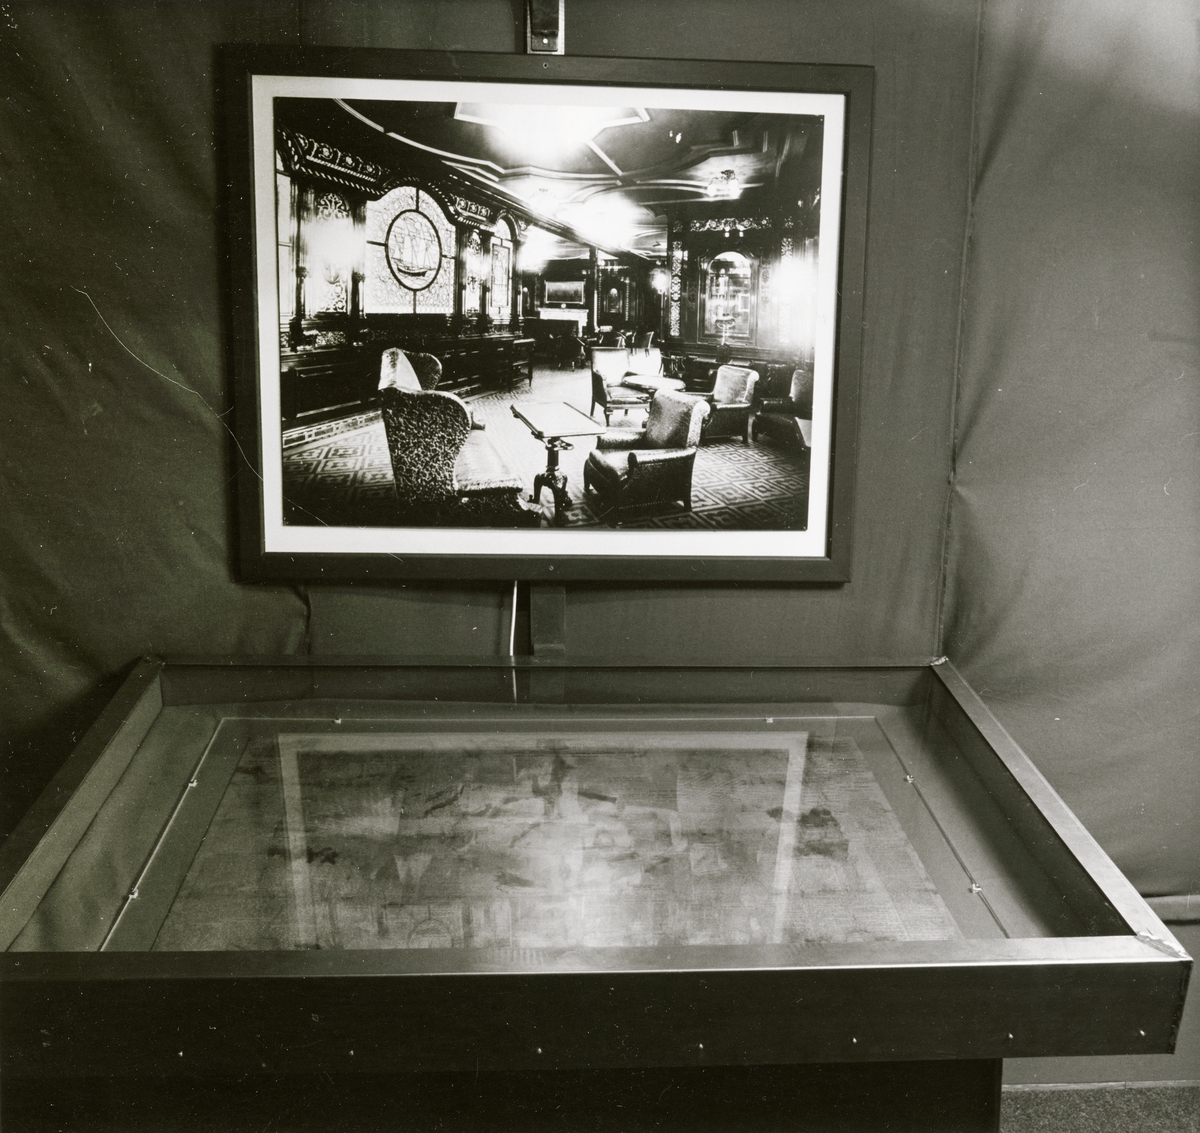 Utställningen "Titanics skatter". Monter i utställningen samt ett fotografi som visar en miljö från Titanic.